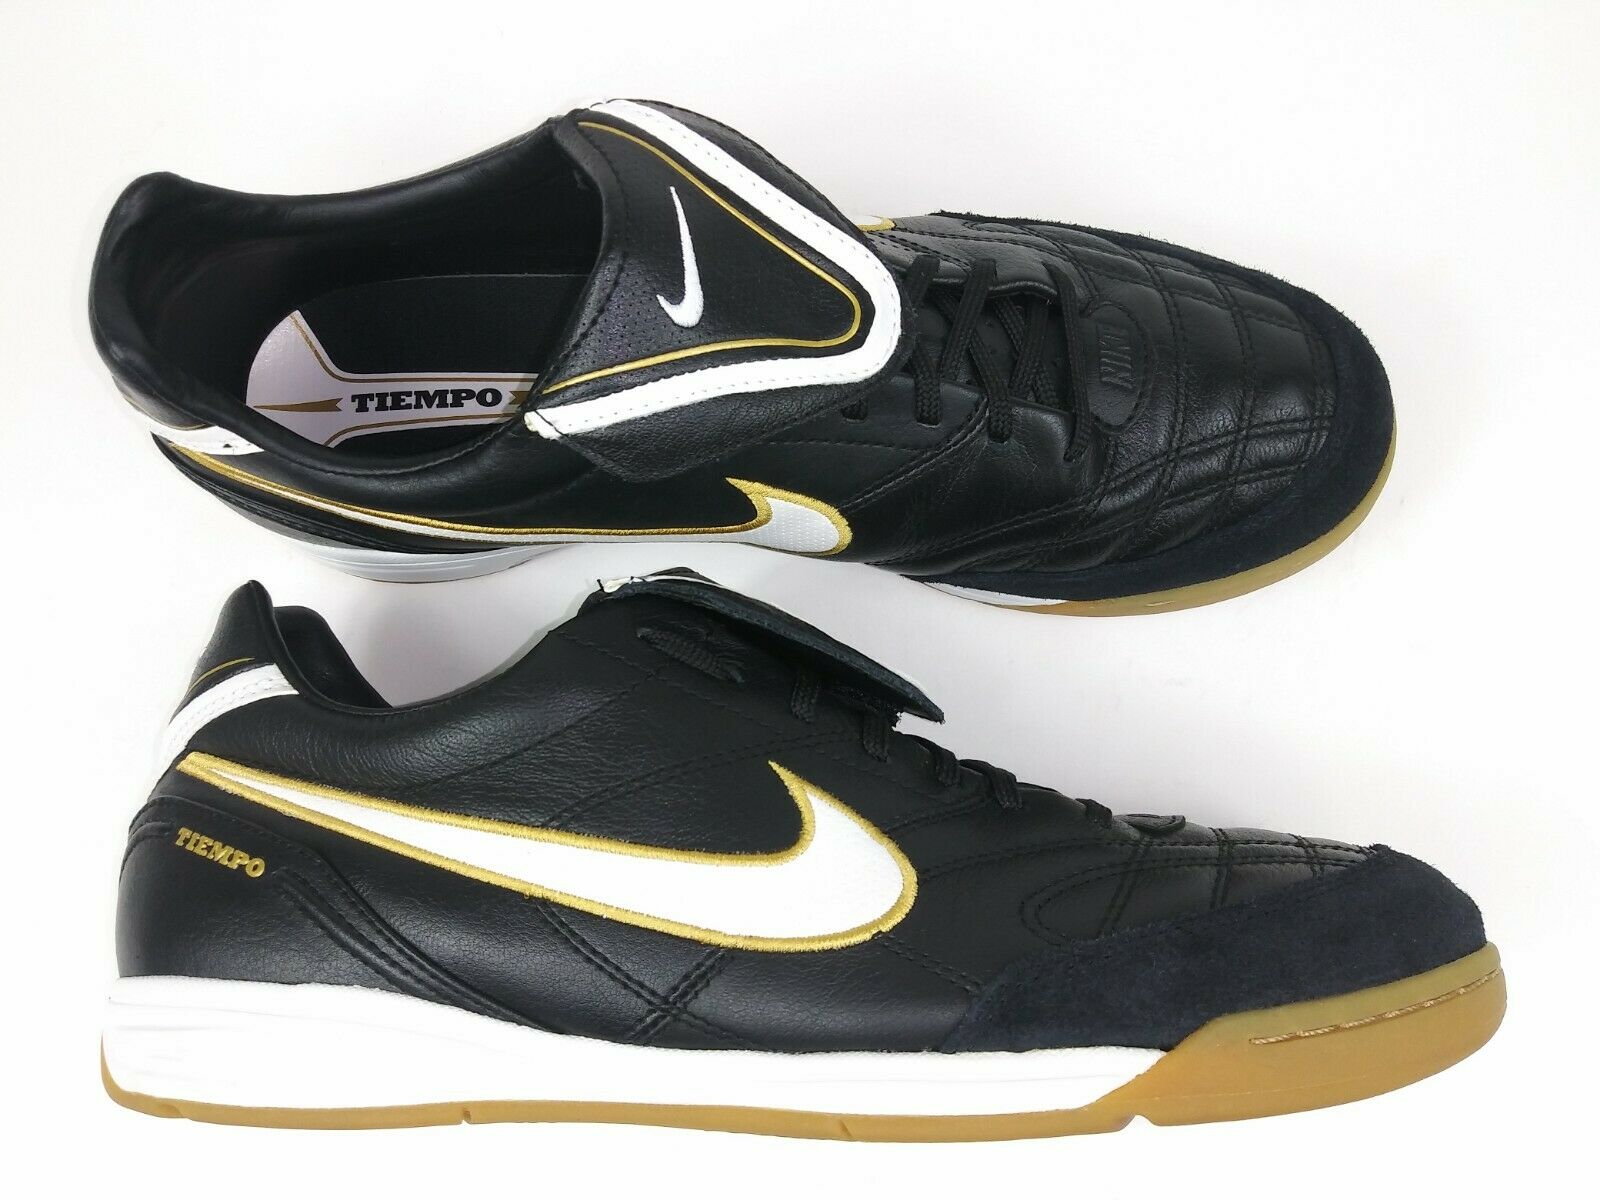 Nike Tiempo Indoor Shoes Black Gold – Footwear